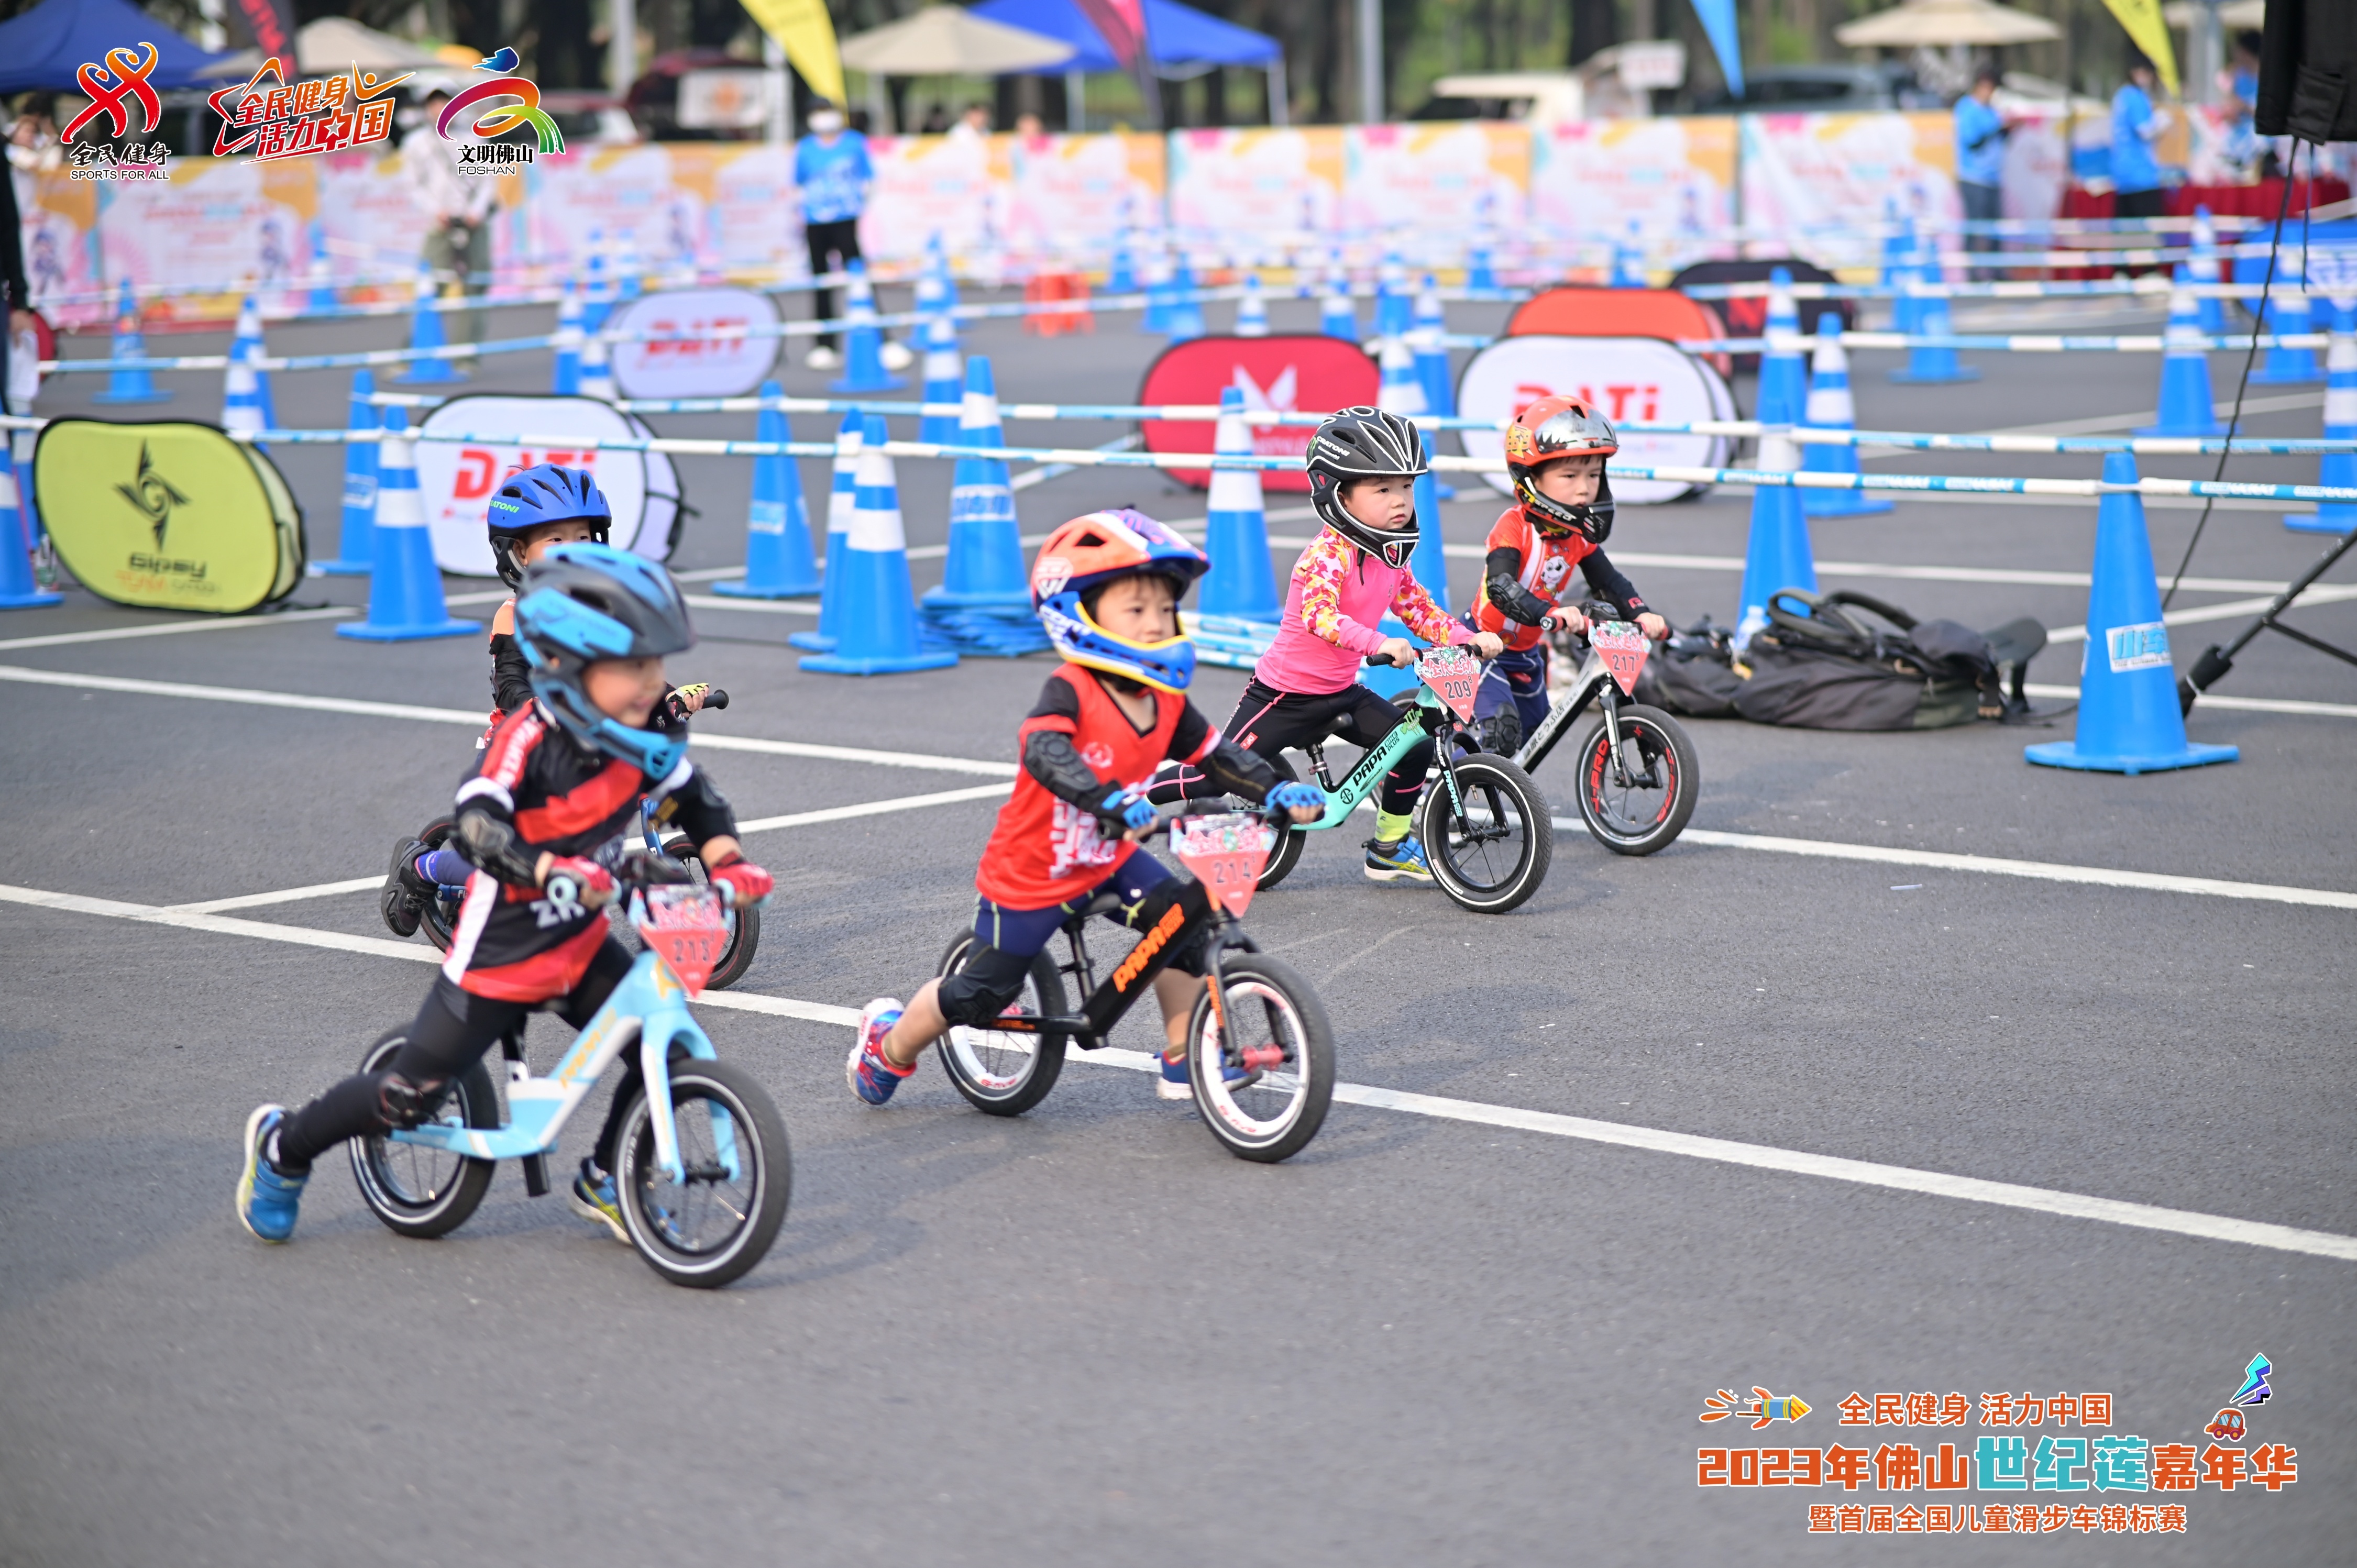 2023年佛山世纪莲嘉年华暨首届全国儿童滑步车锦标赛在世纪莲体育中心举行。